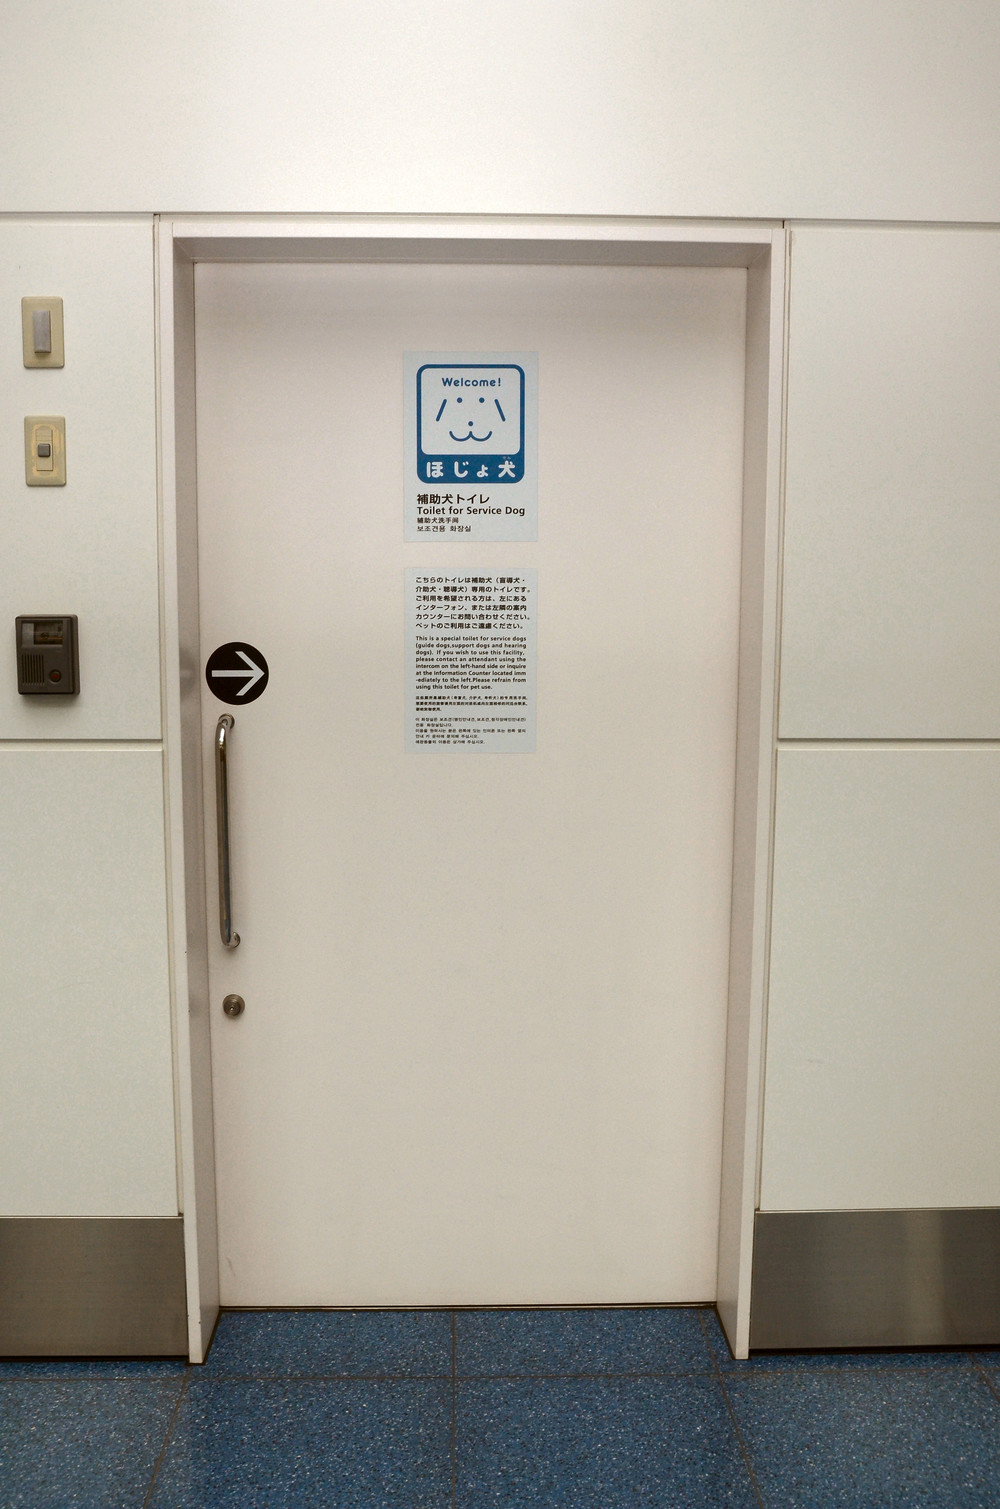 補助犬専用トイレは通常施錠されており、入口横のインターホンで係員を呼び出して開ける